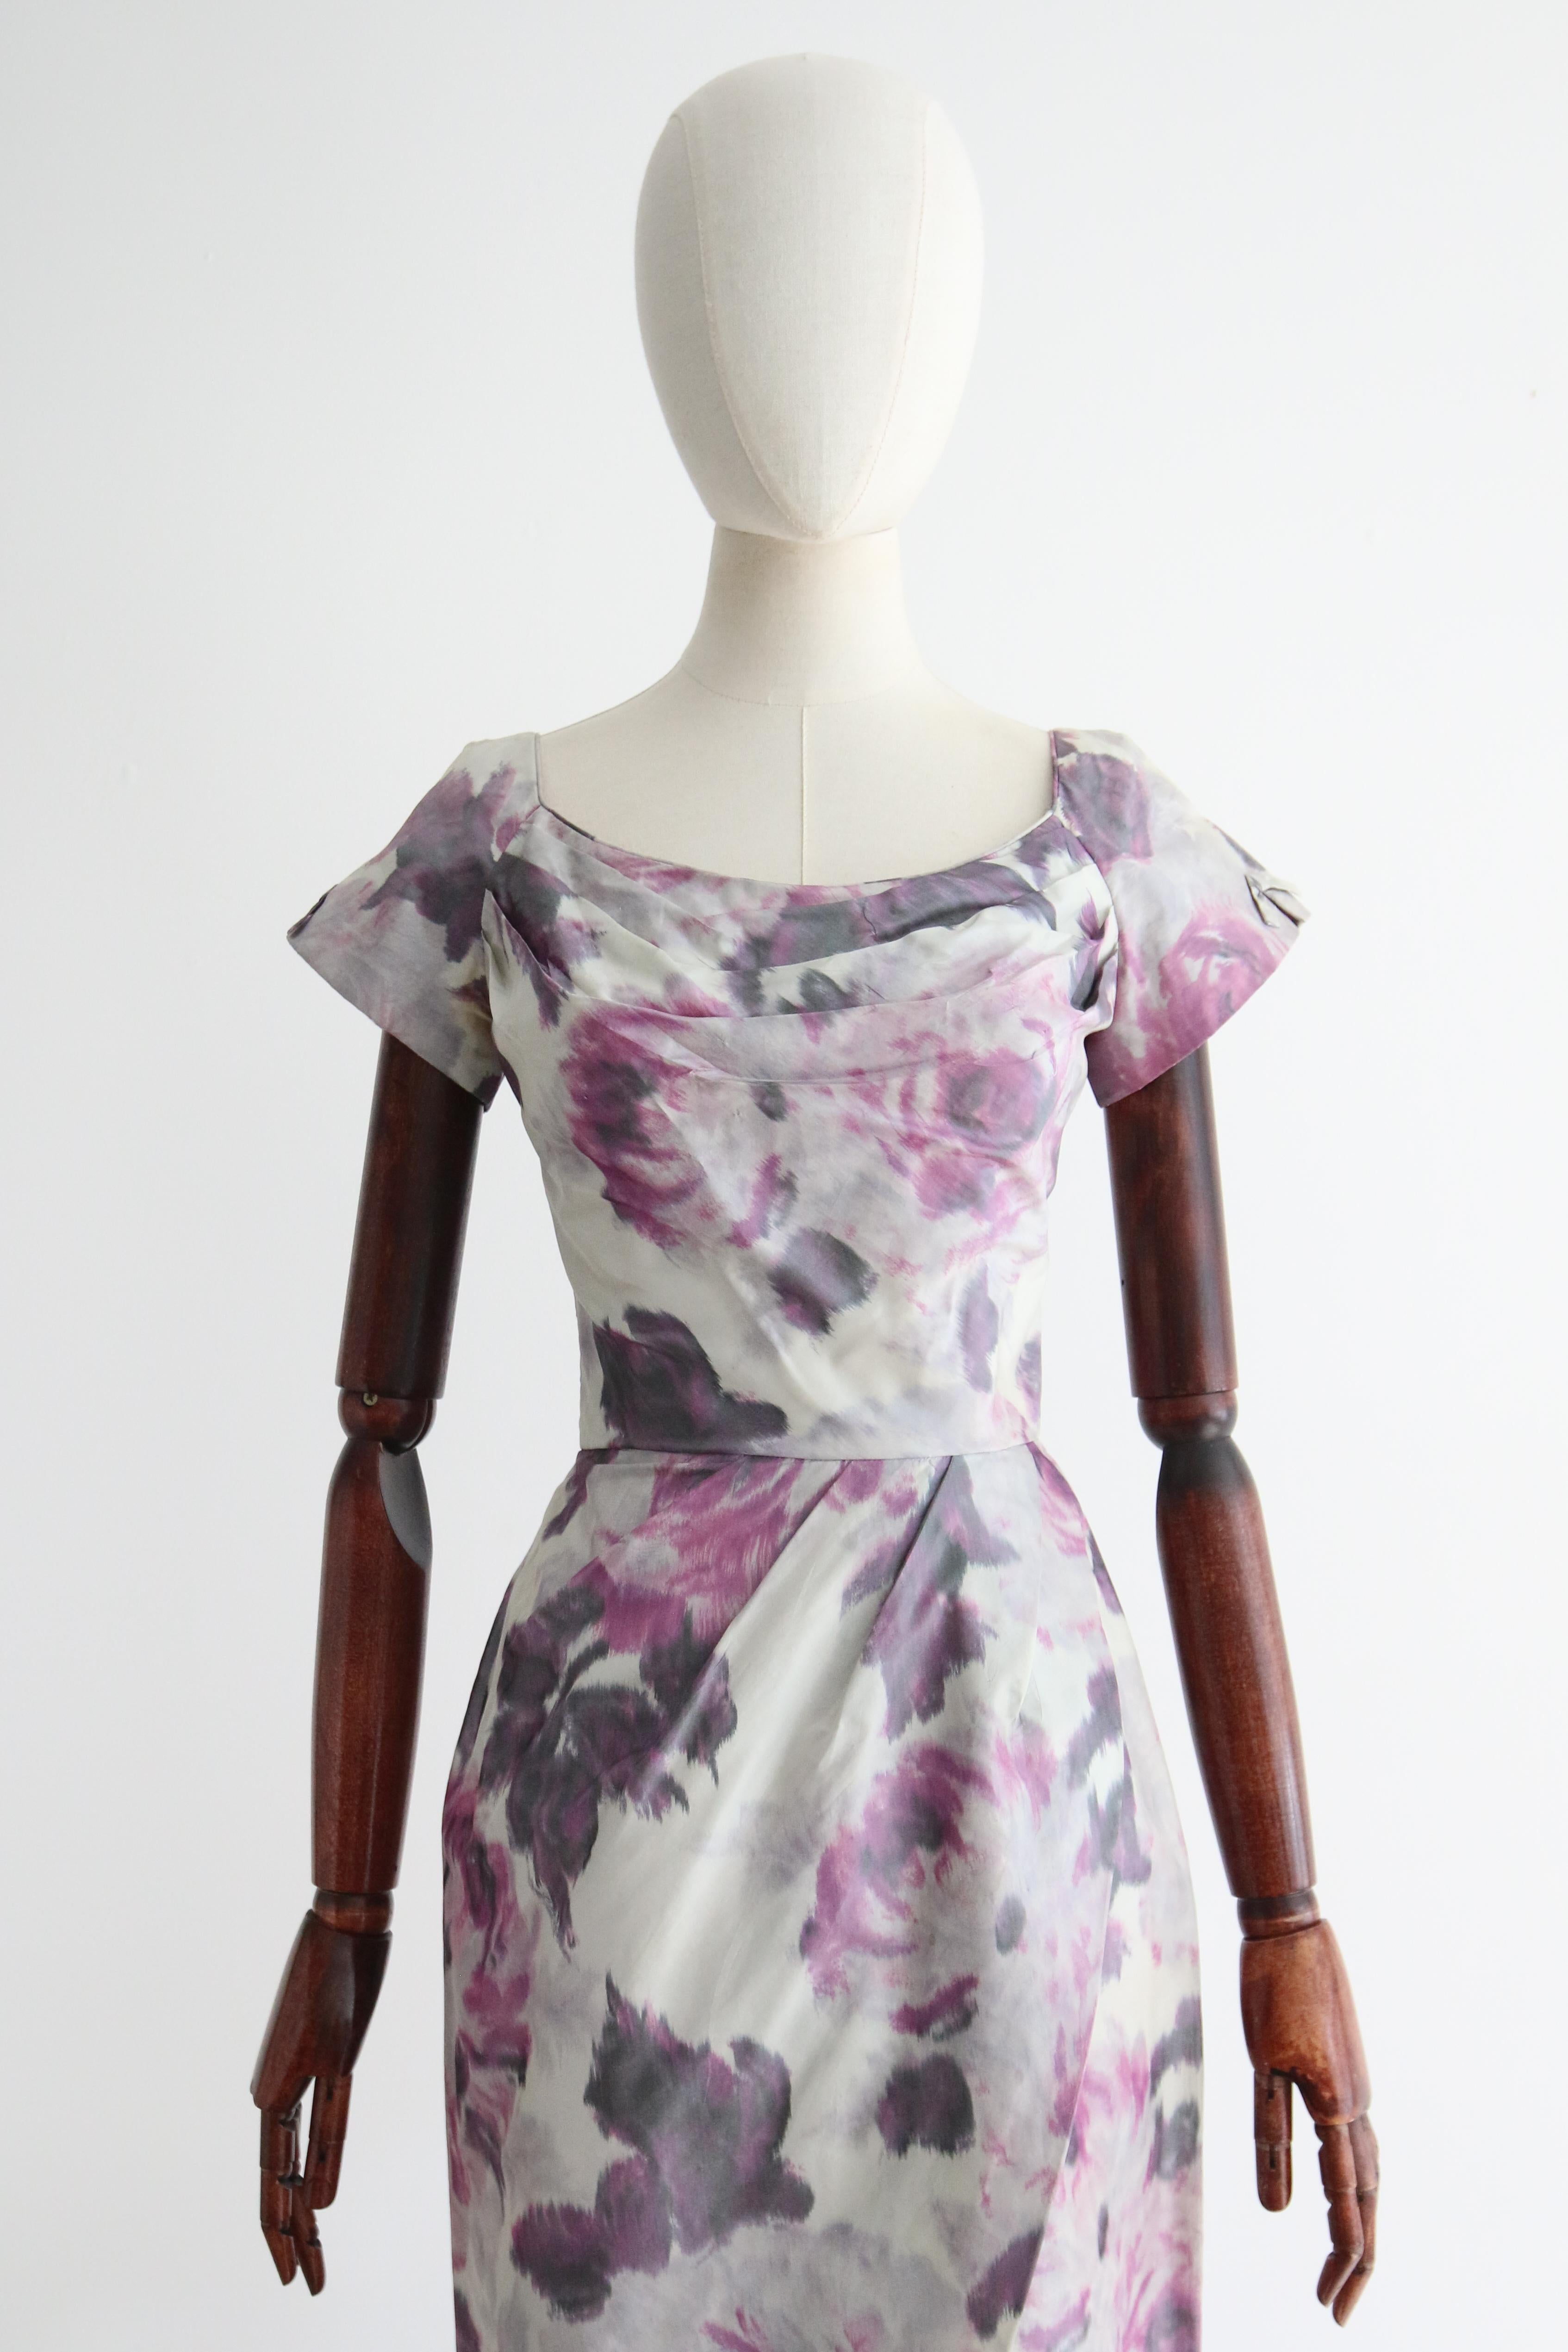 Dieses originelle Kleid aus Wasserseide mit Blumenmuster aus den 1950er Jahren ist in den reizvollsten Fliedertönen auf taubengrauem Hintergrund gehalten und genau das richtige Stück für Ihre Vintage-Sammlung.  

Der runde Ausschnitt des Kleides